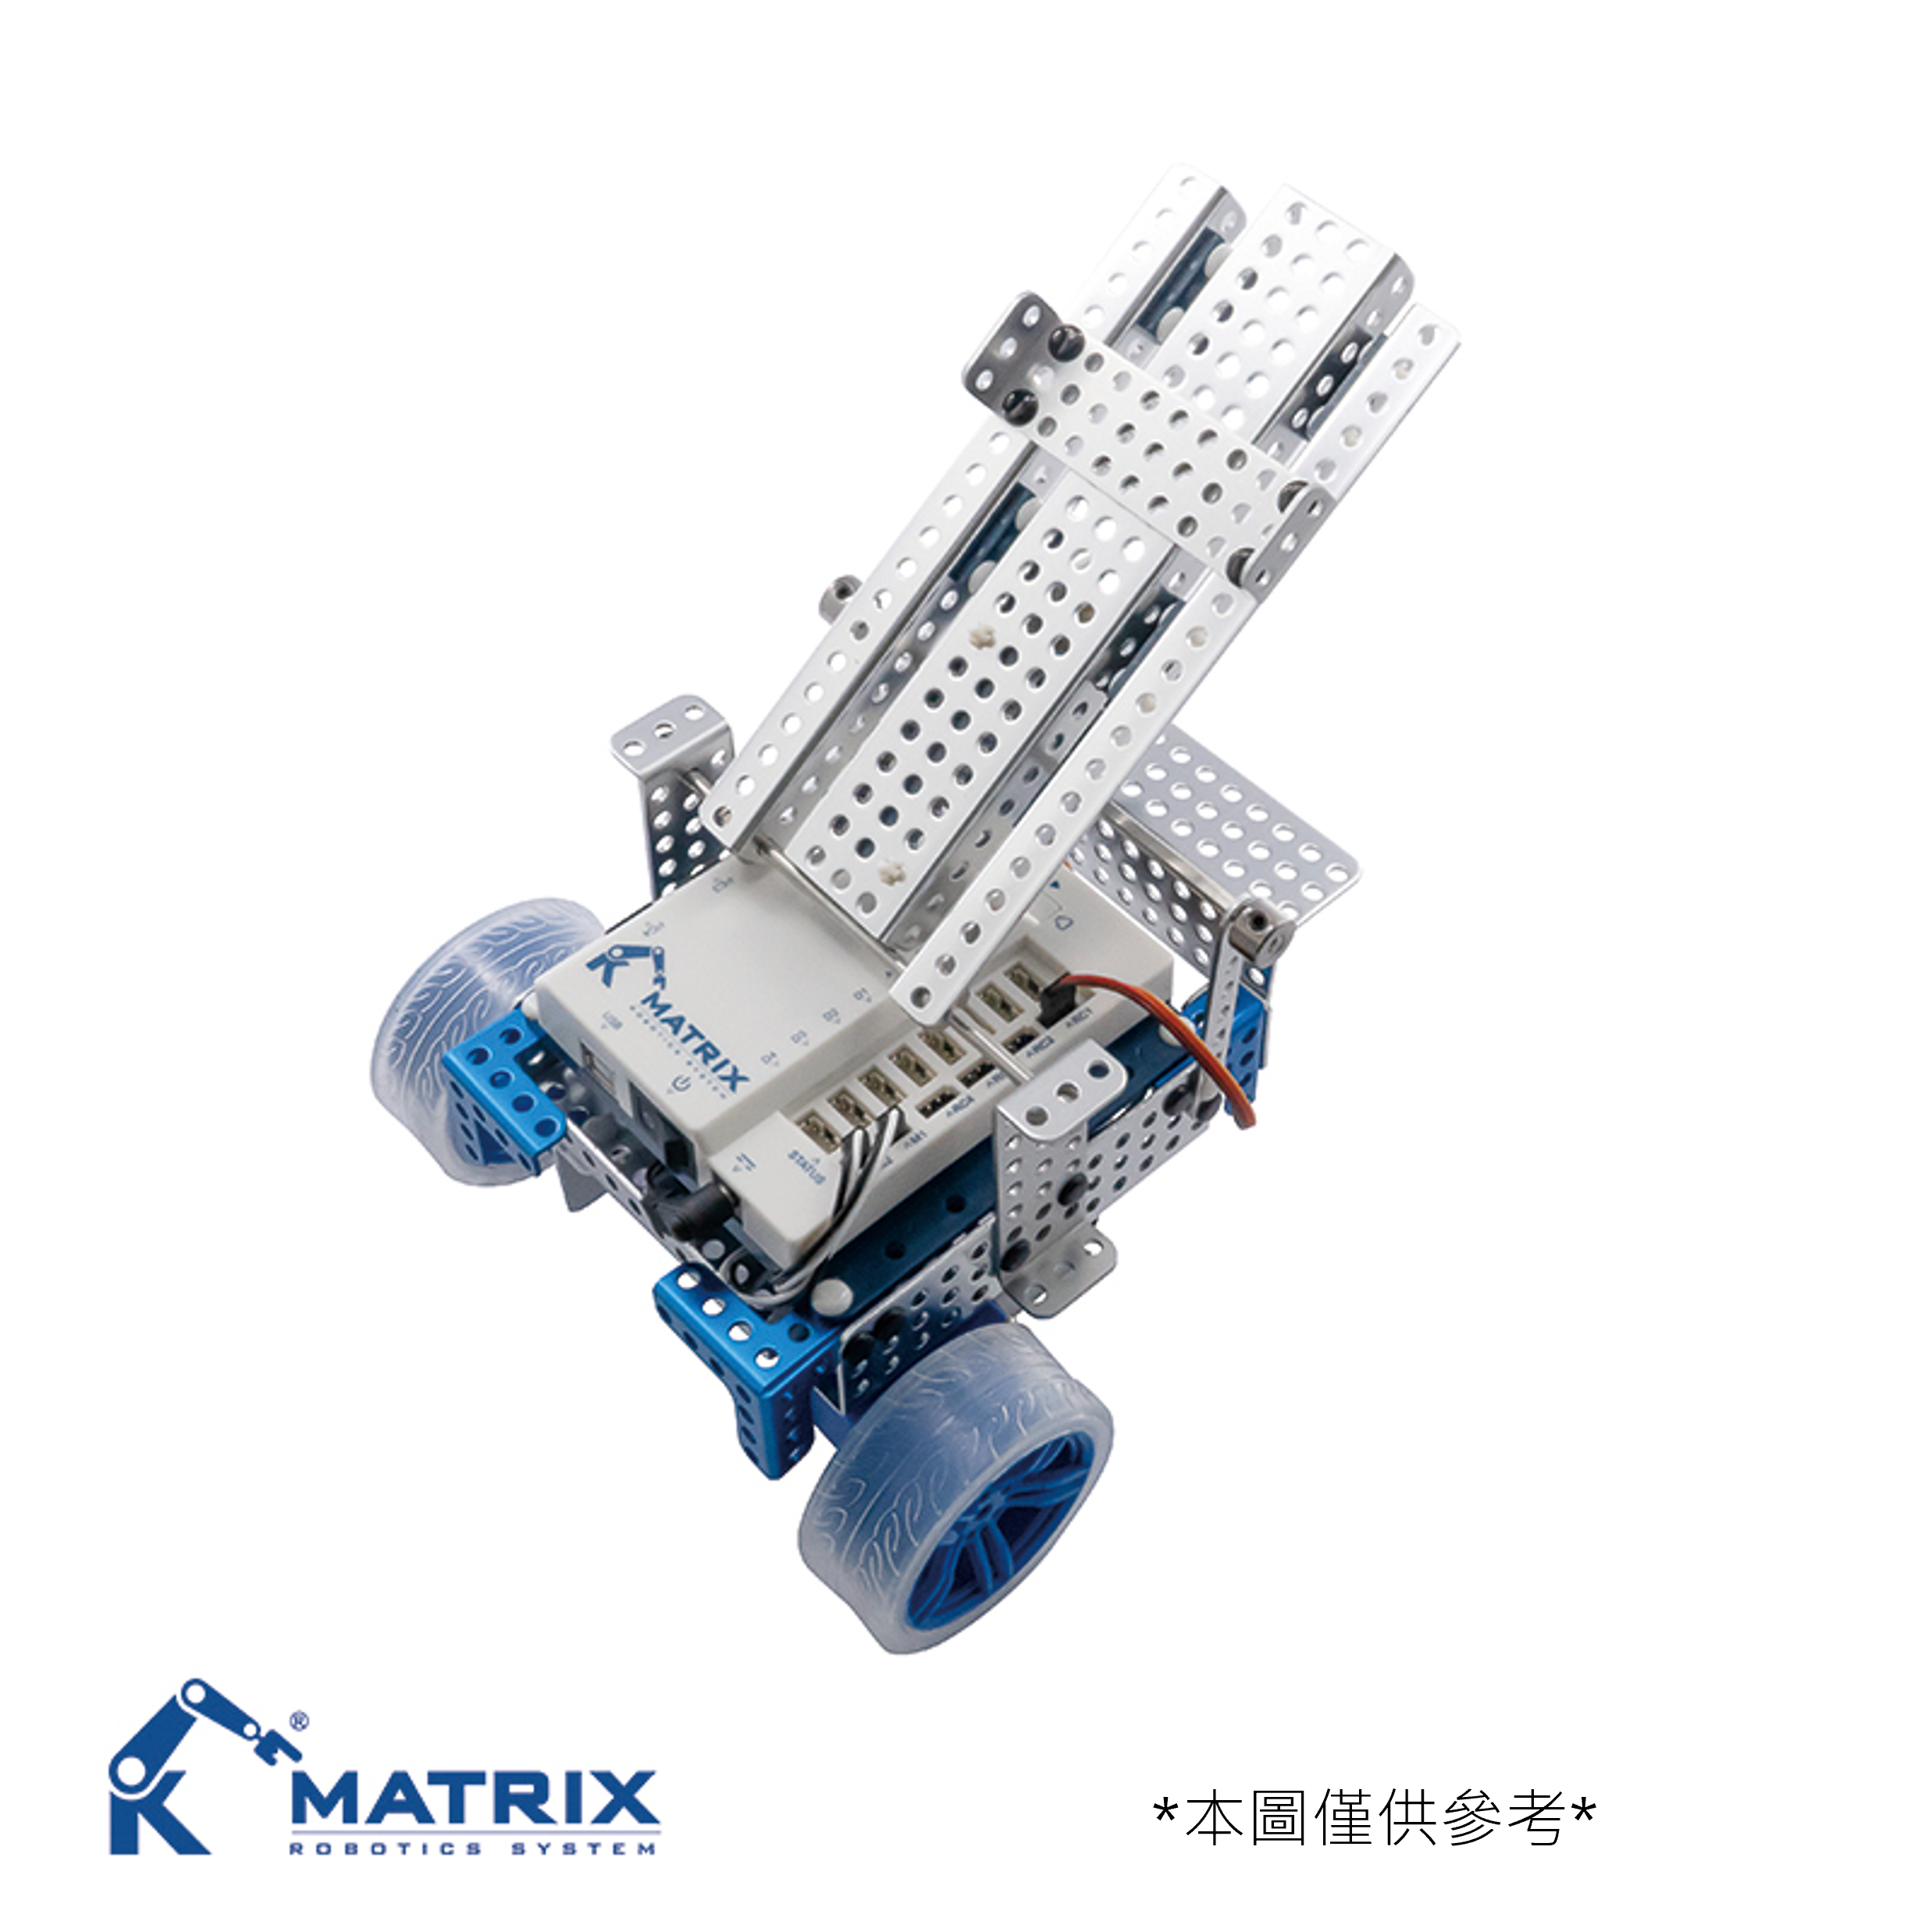 MATRIX Mini Starter Robot Set 2.0 - MR120